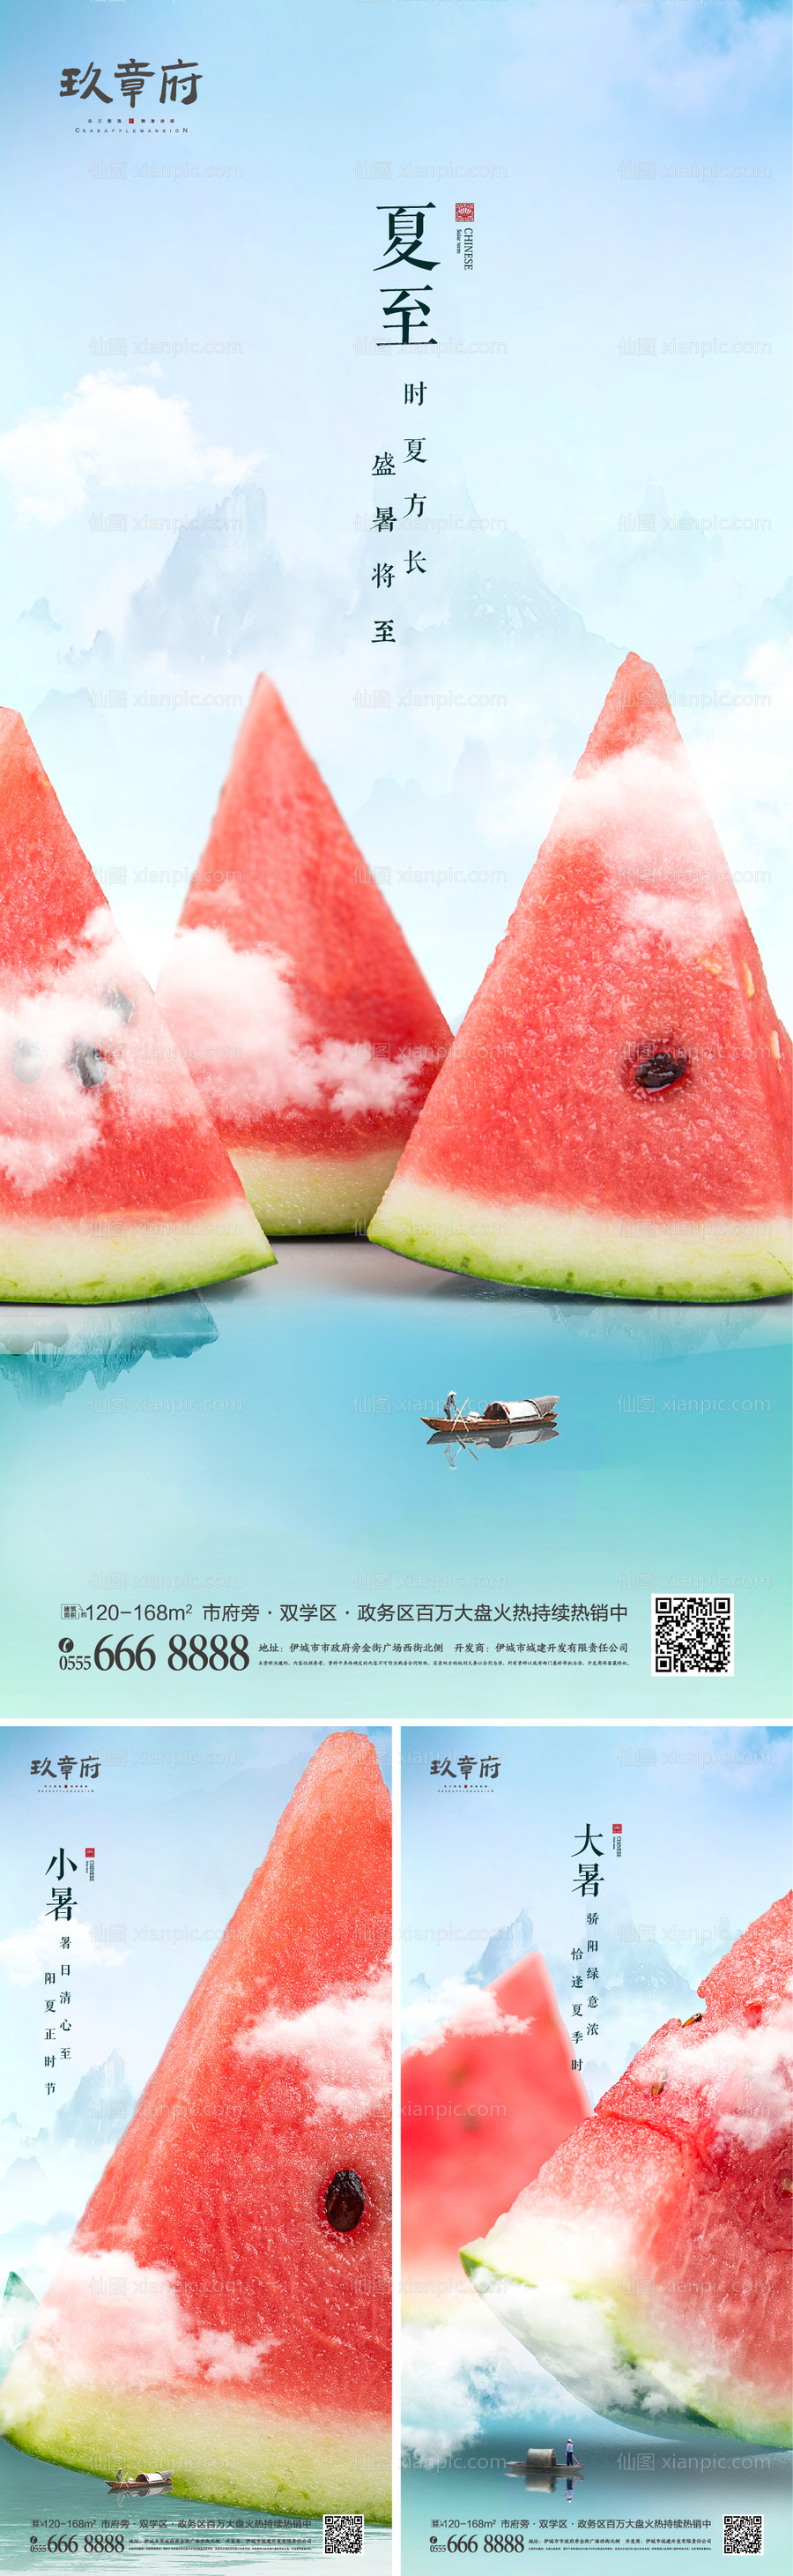 素材乐-夏至小暑大暑中国风系列海报